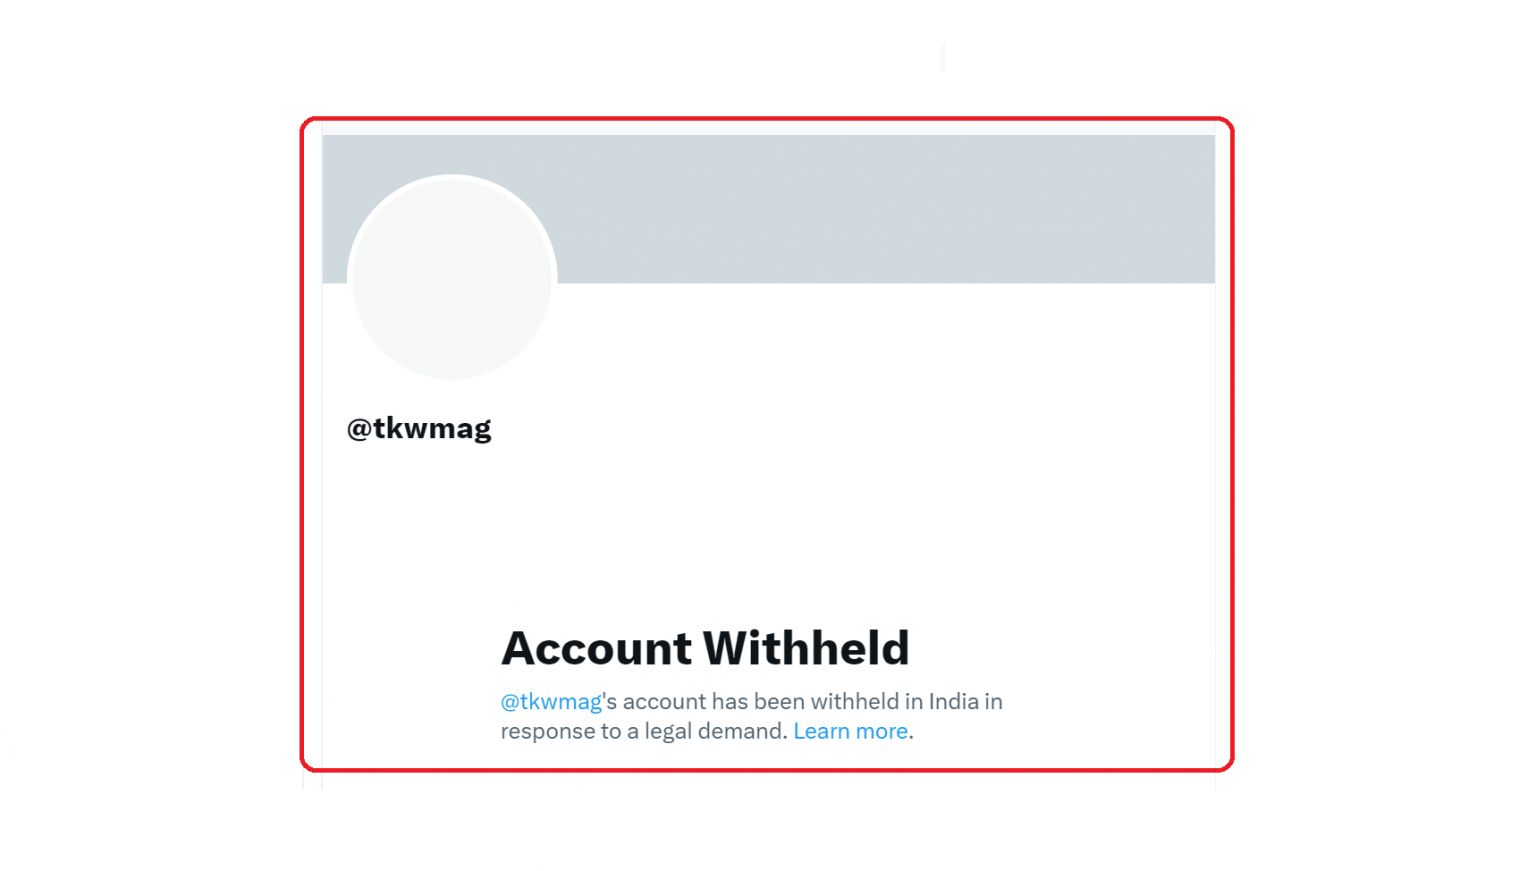 سوشل سائٹ ایکس (سابقہ نام  ٹوئٹر) پر دی کشمیر والا کا اکاؤنٹ اب نہیں کھل رہا ہے۔